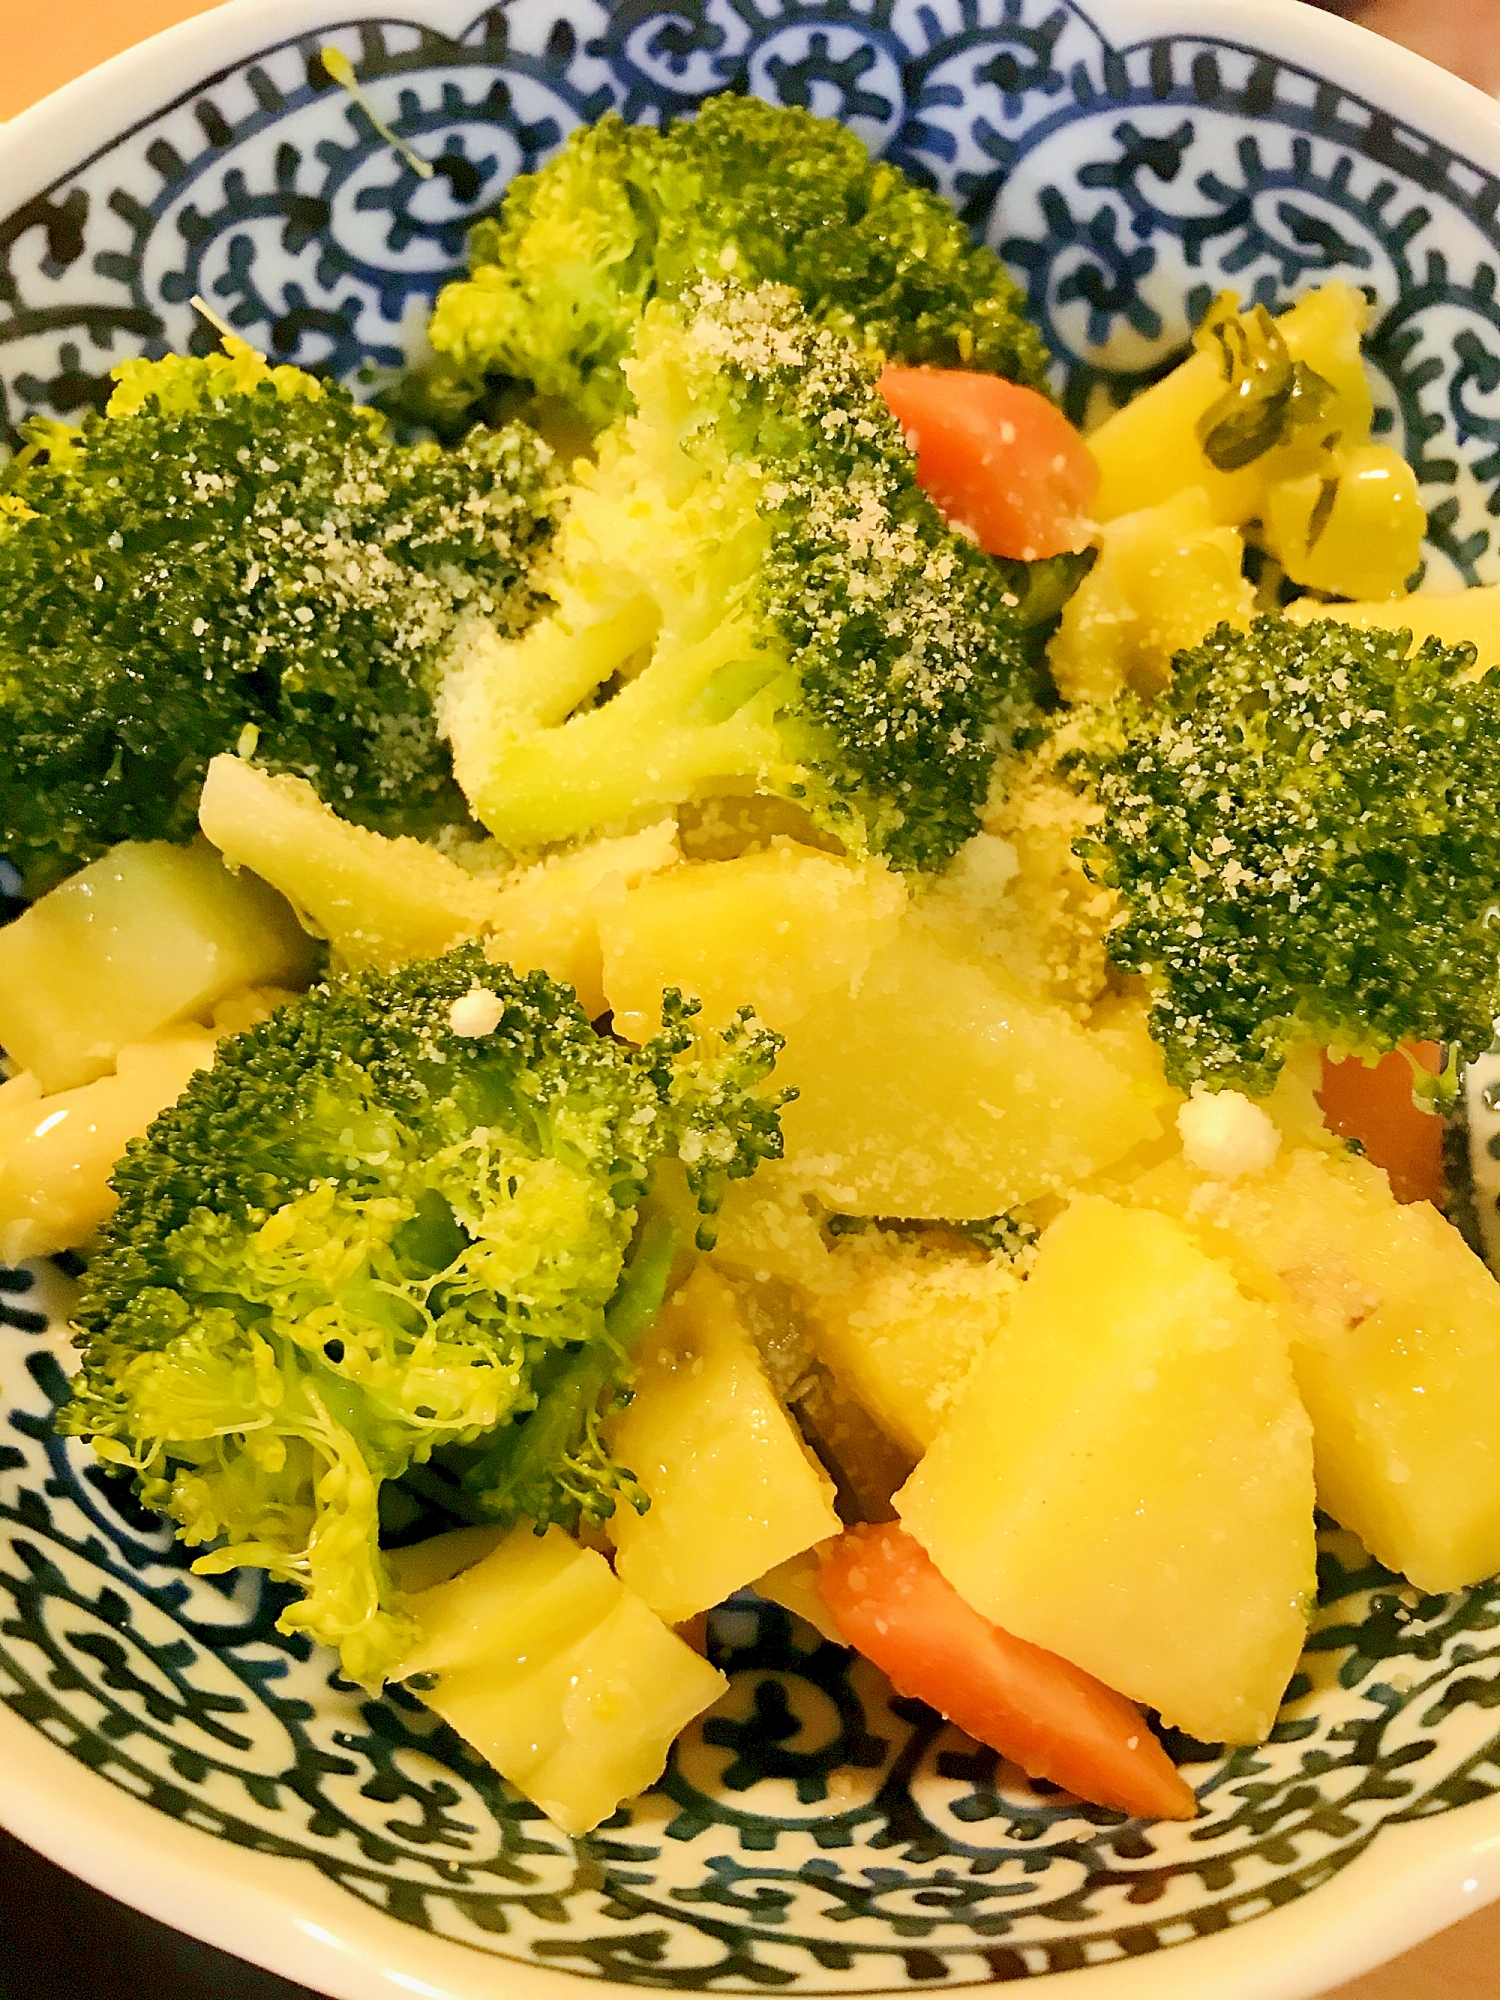 塩茹でブロッコリーの温野菜サラダ●簡単ドレッシング